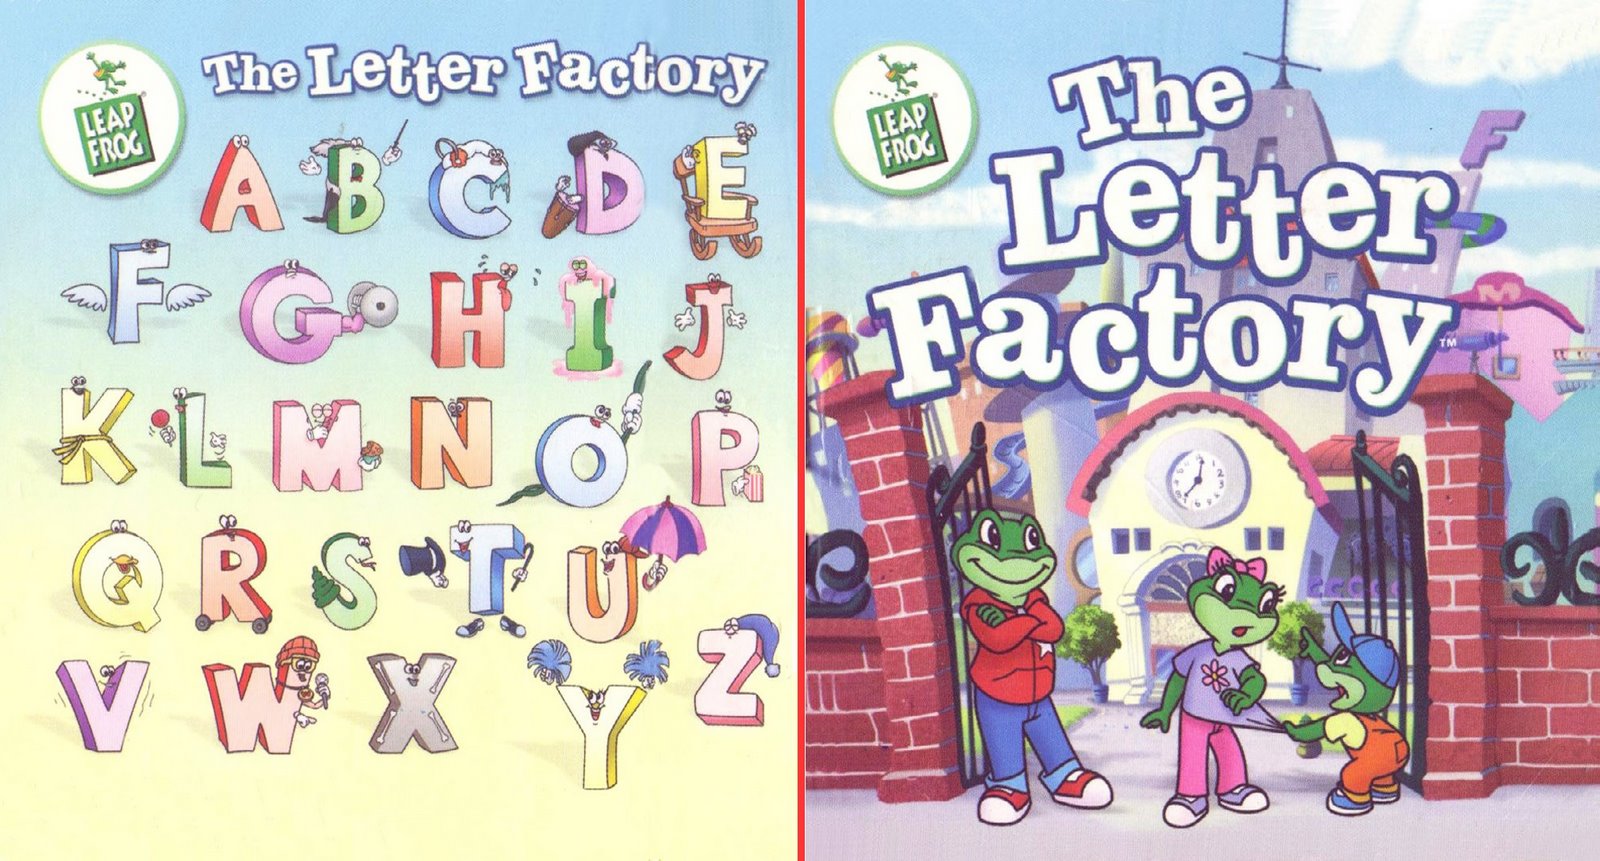 leapfrog letter factory song